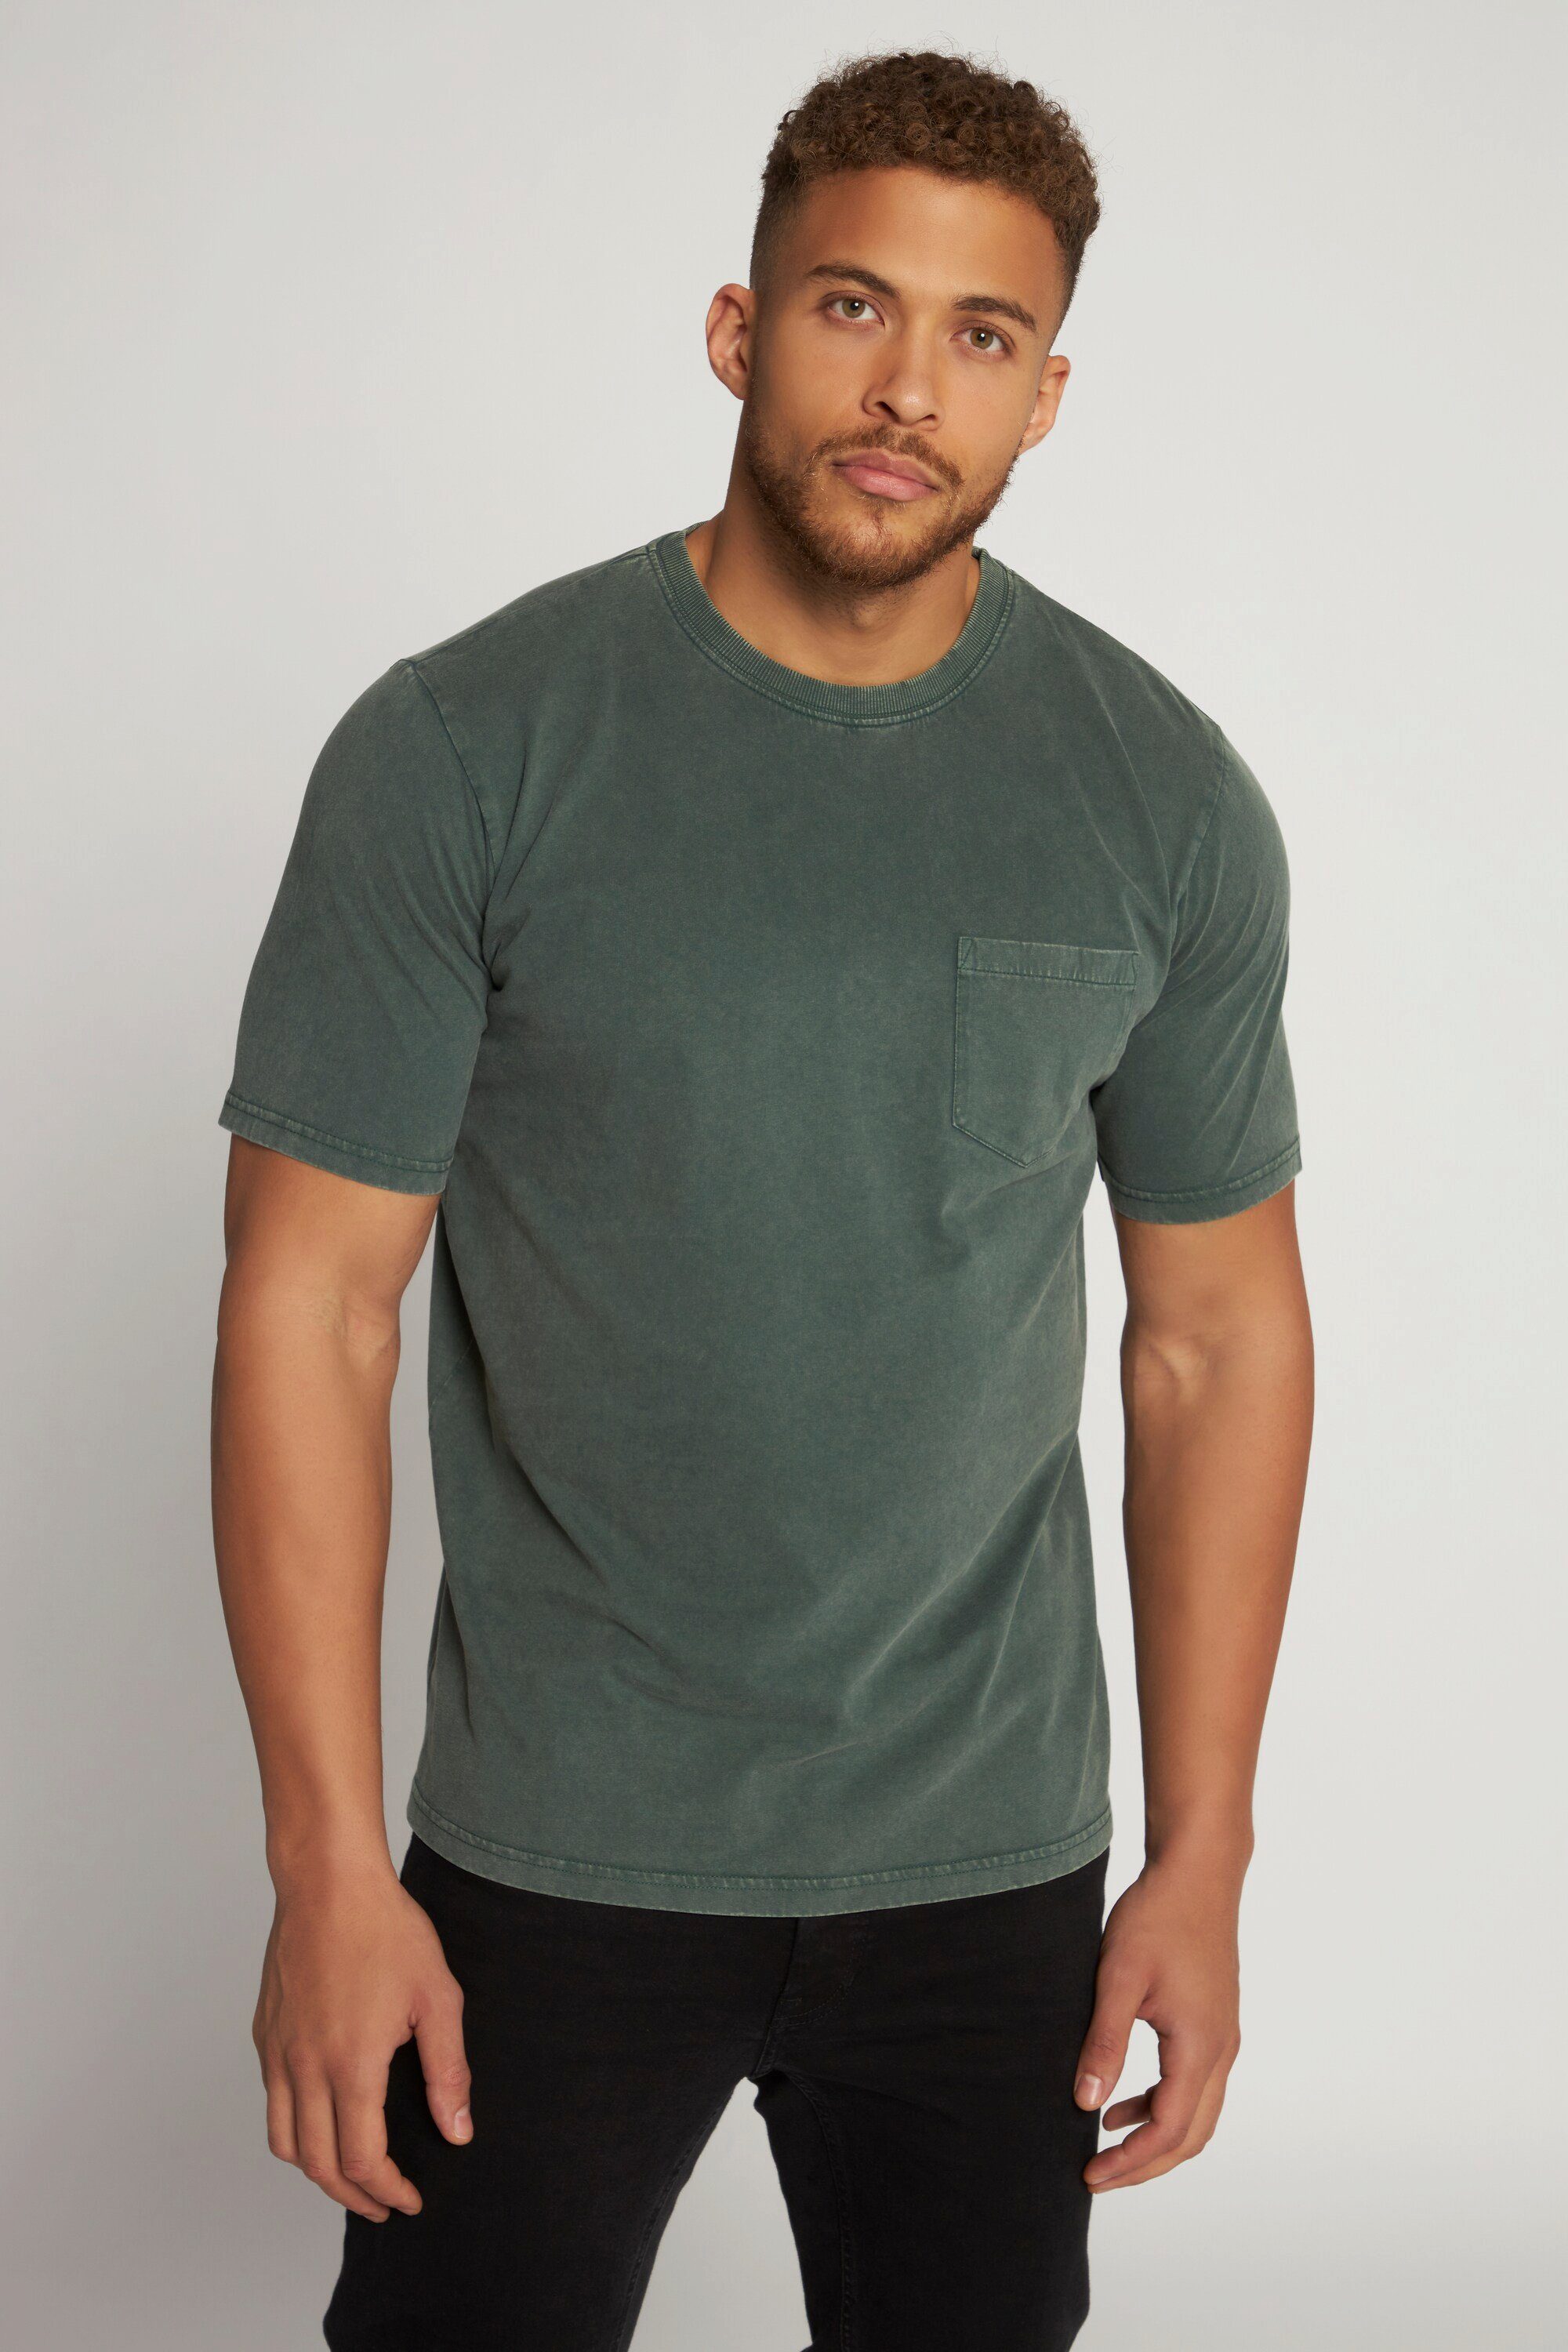 washed grün Halbarm acid Brusttasche T-Shirt T-Shirt JP1880 Rundhals